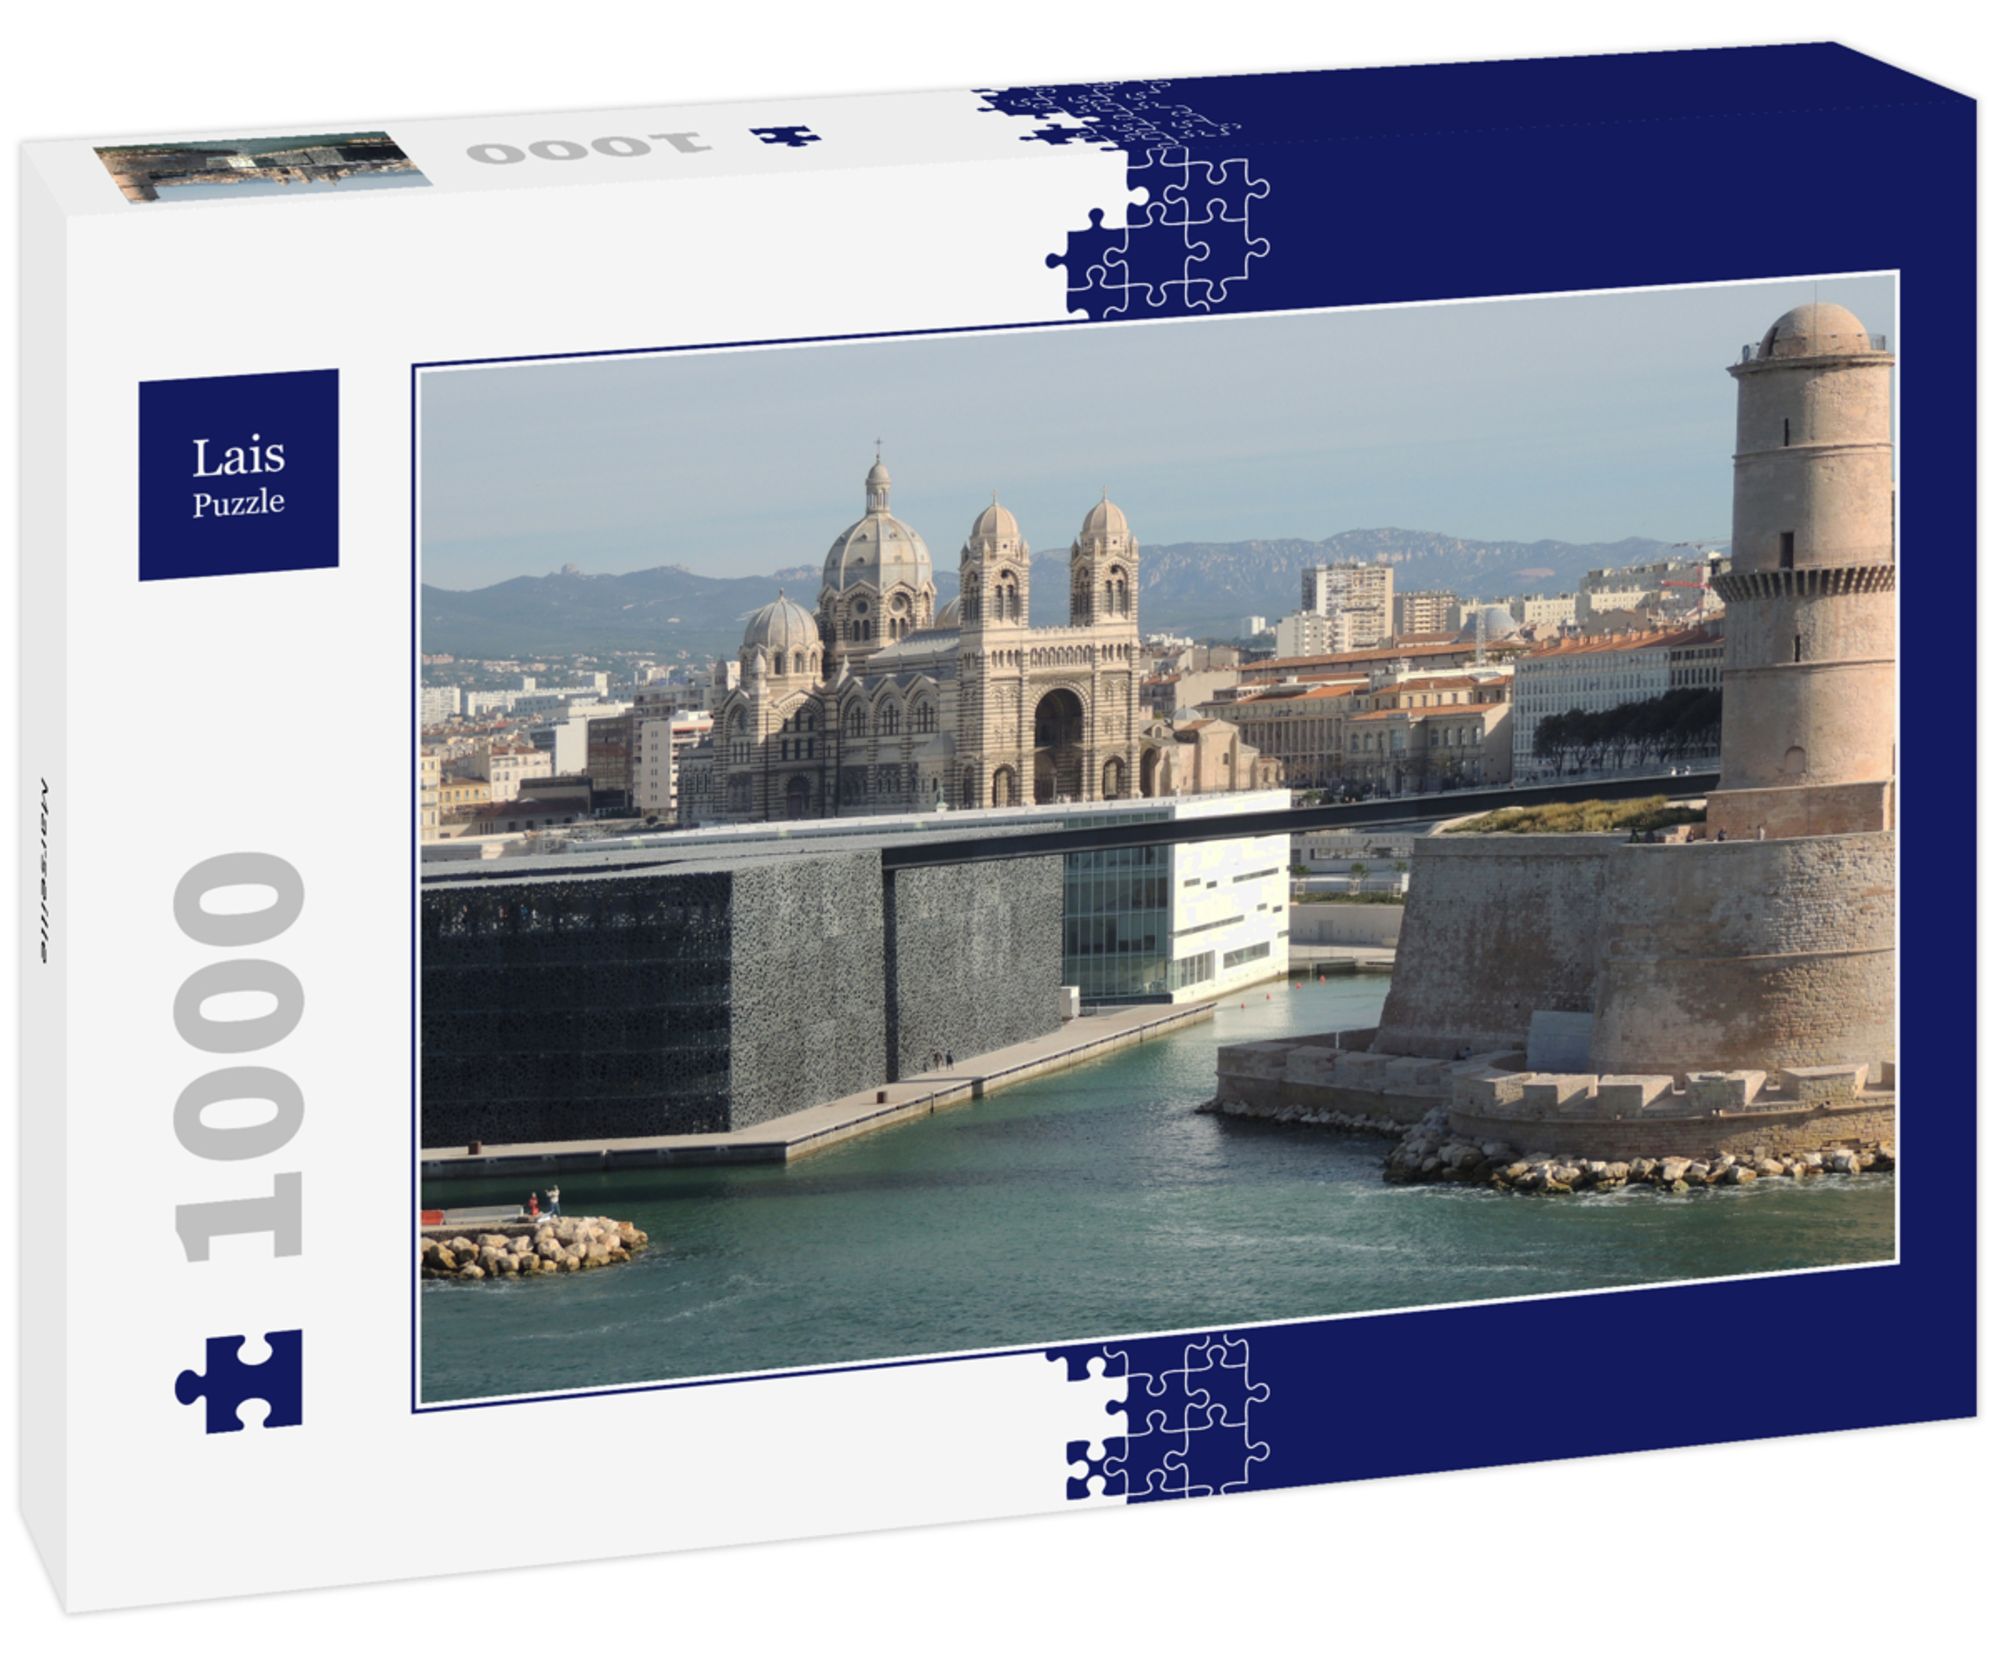 Lais Puzzle Marseille 1000 Teile' kaufen - Spielwaren